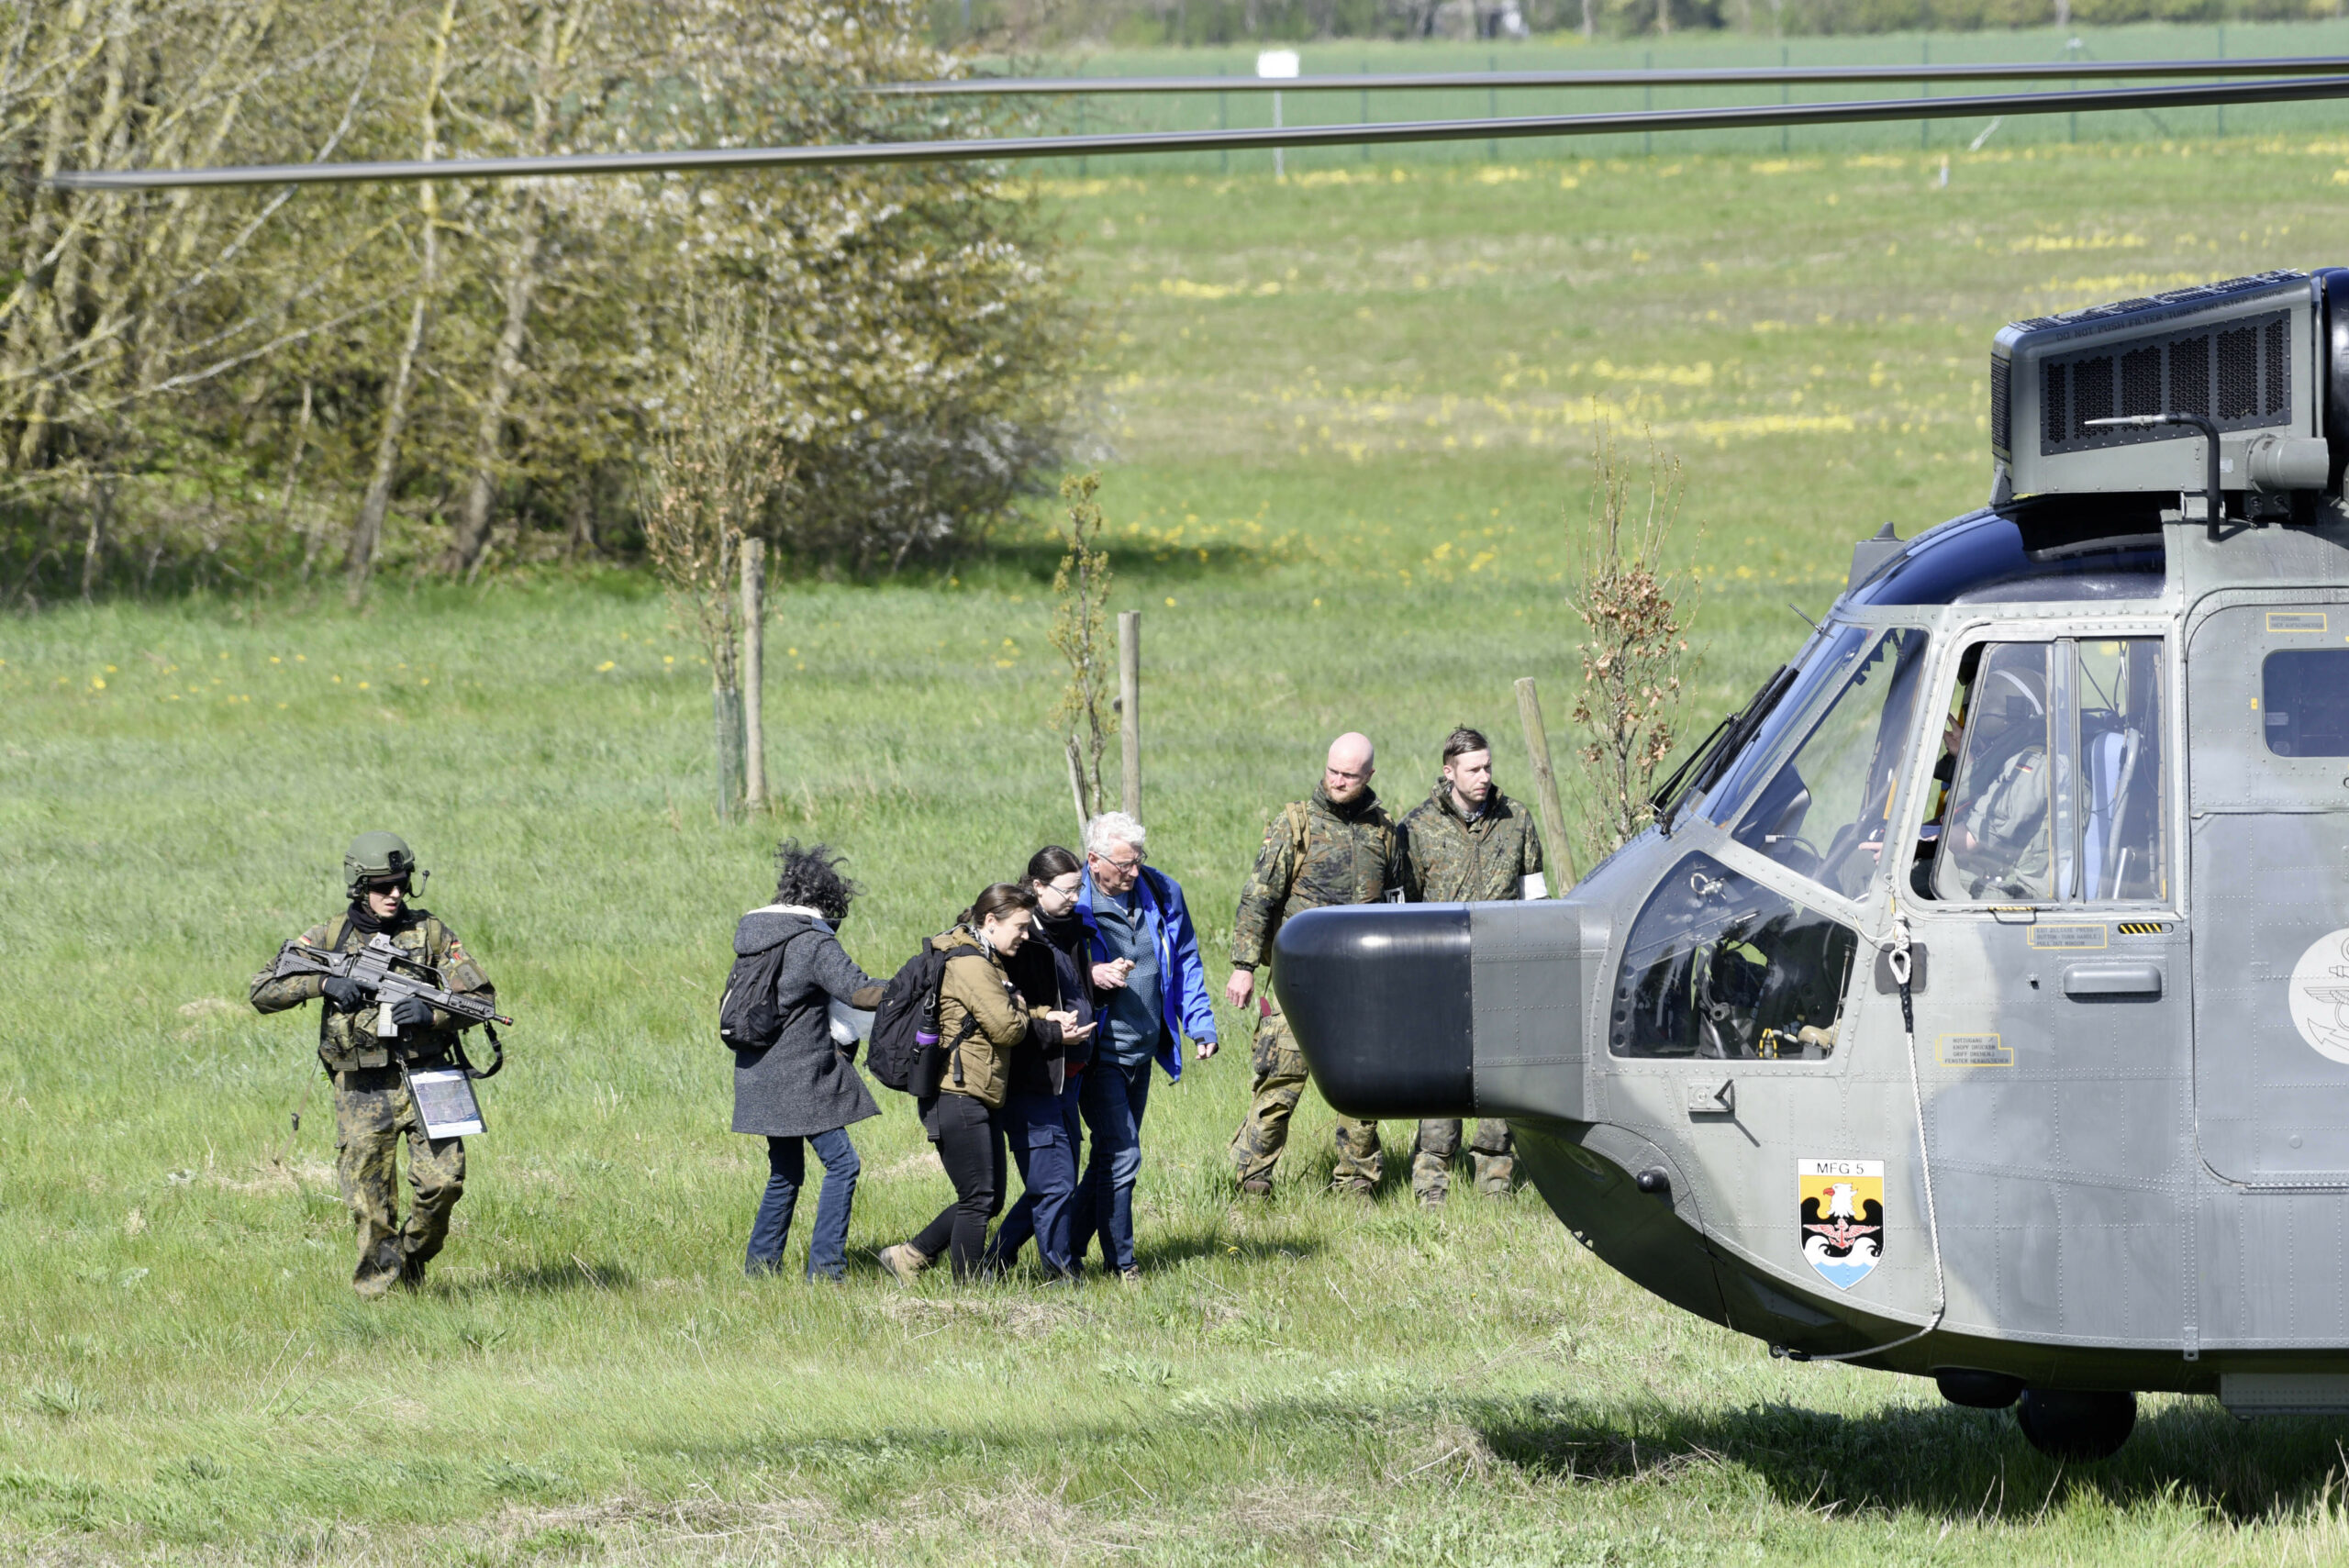 Soldaten evakuieren Personen bei einer Übung auf dem Gelände einer Radarstation bei Putgarten auf der Insel Rügen.